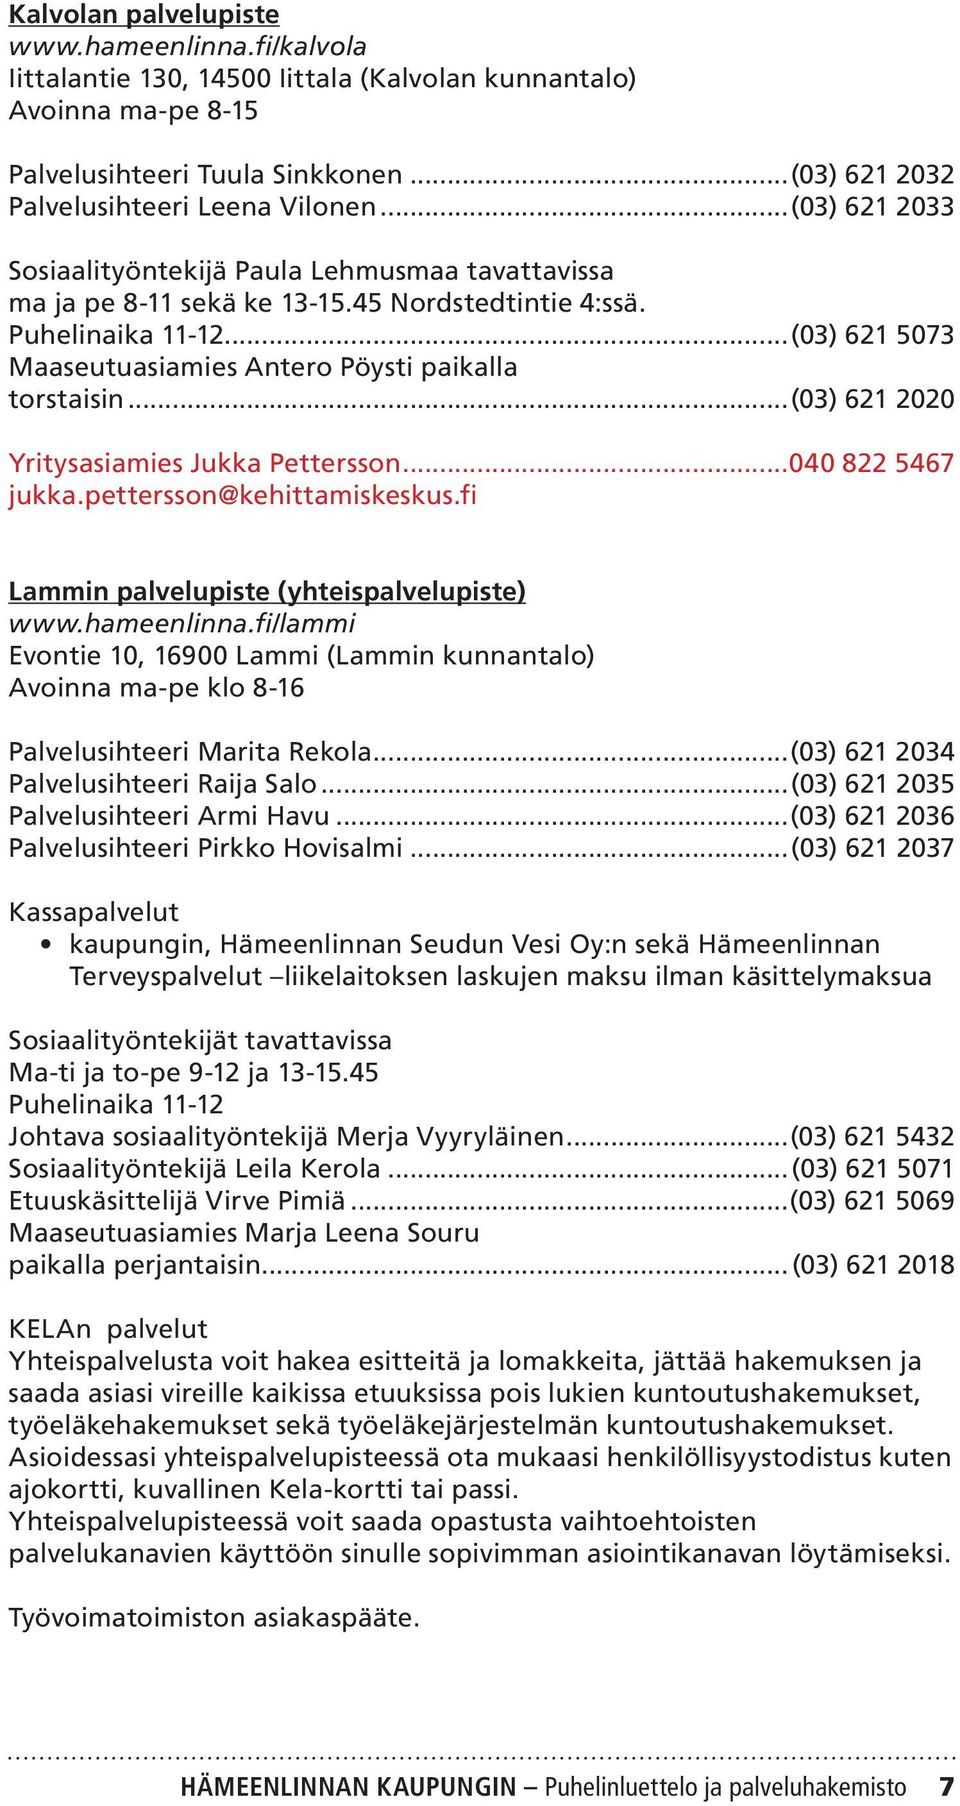 ..(03) 621 2020 Yritysasiamies Jukka Pettersson...040 822 5467 jukka.pettersson@kehittamiskeskus.fi Lammin palvelupiste (yhteispalvelupiste) www.hameenlinna.